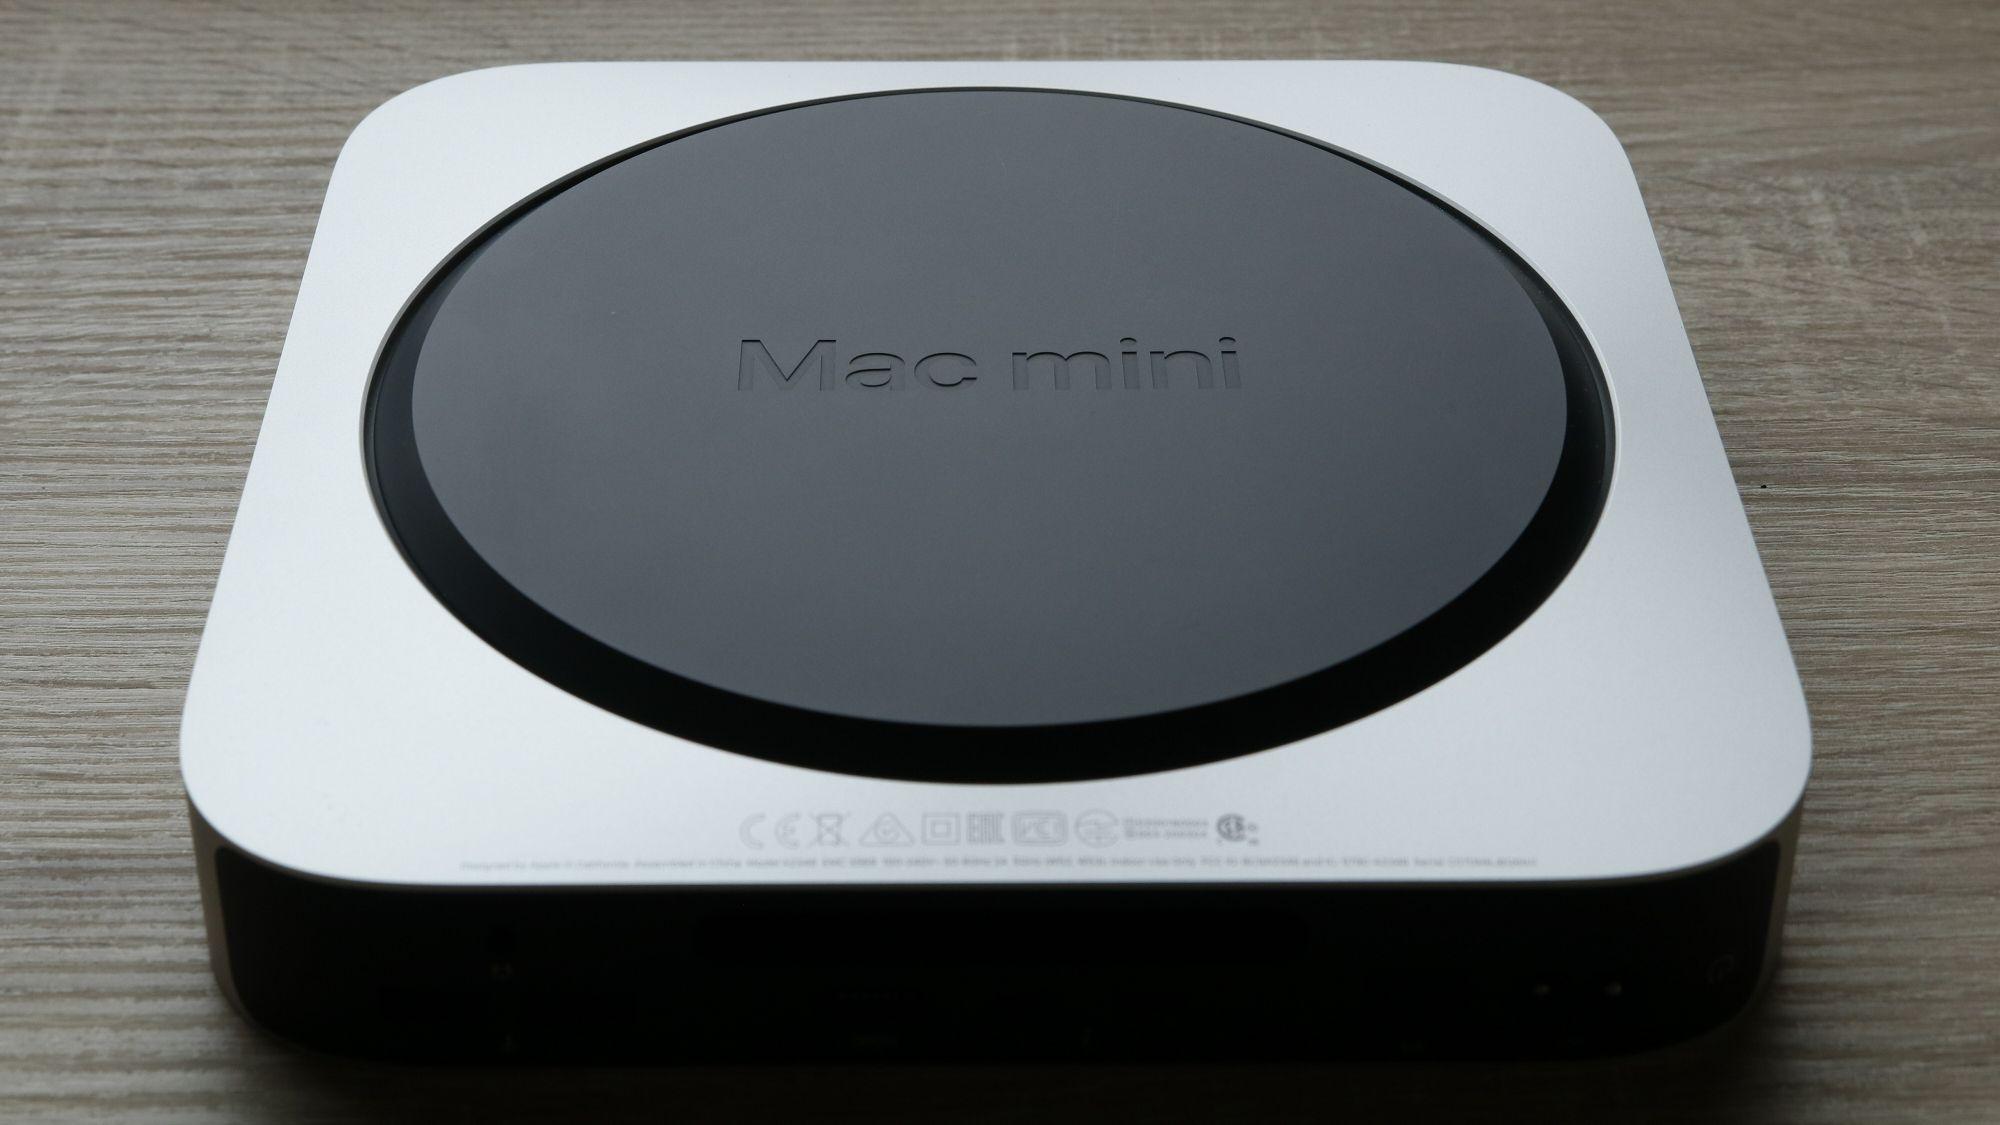 Det ryktes om at Mac mini kommer med den oppdaterte M1X-prosessoren. 